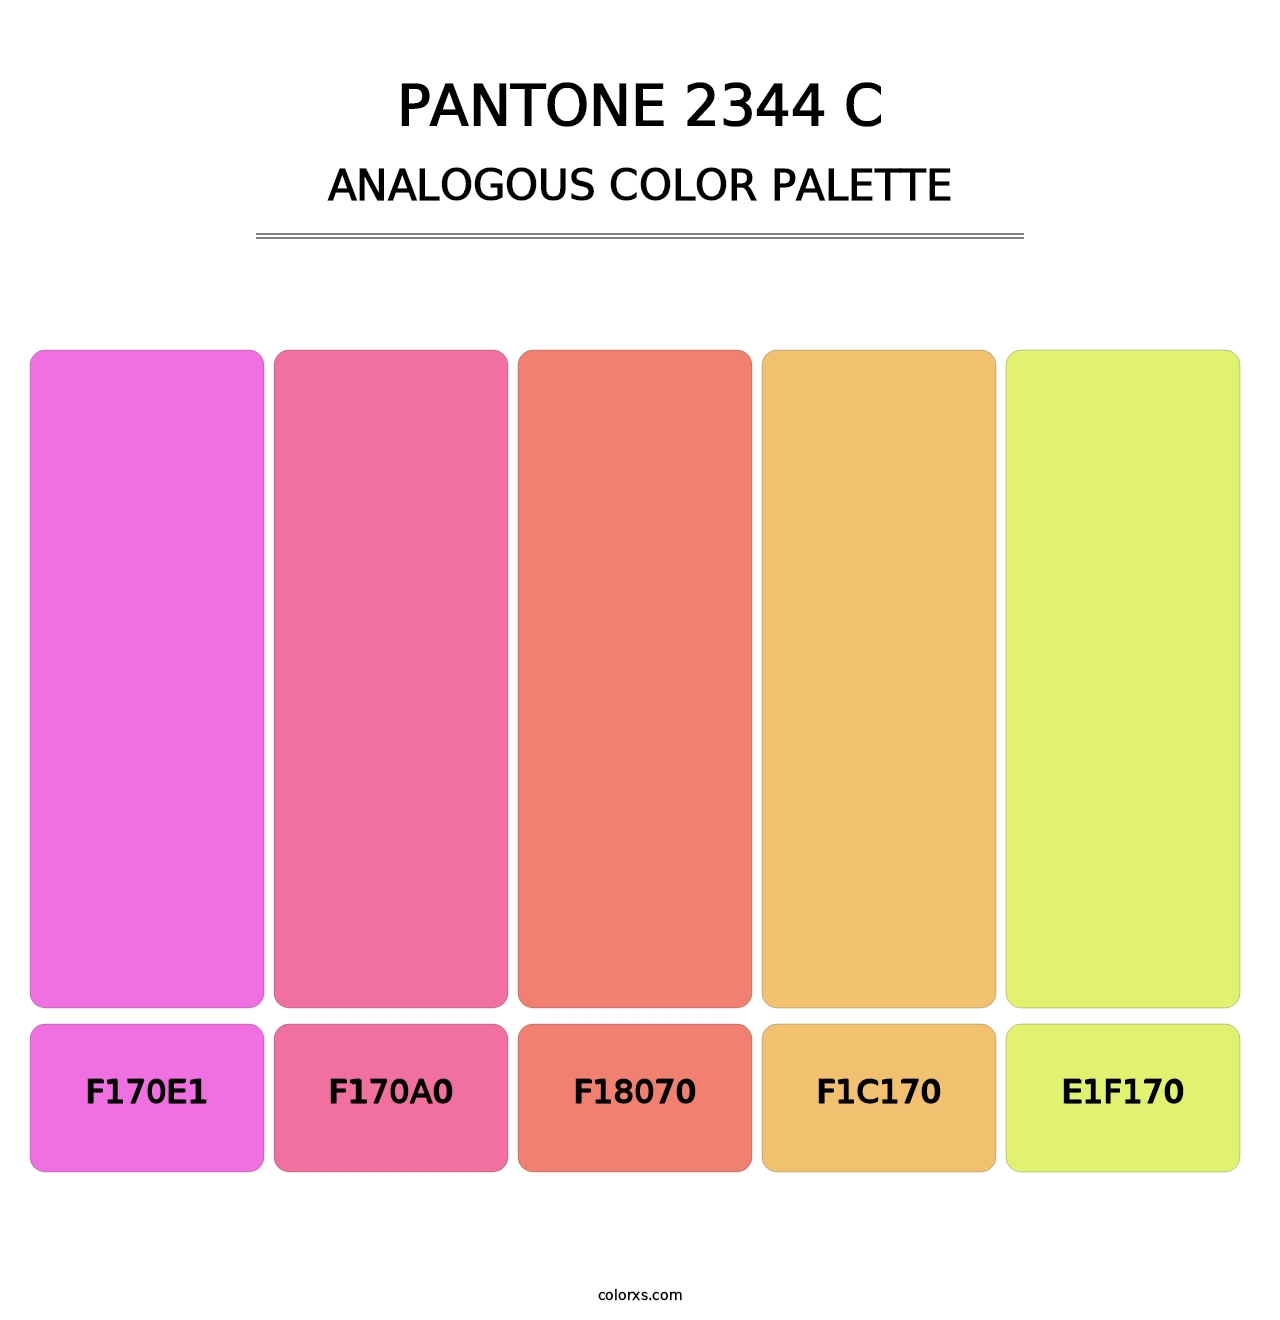 PANTONE 2344 C - Analogous Color Palette